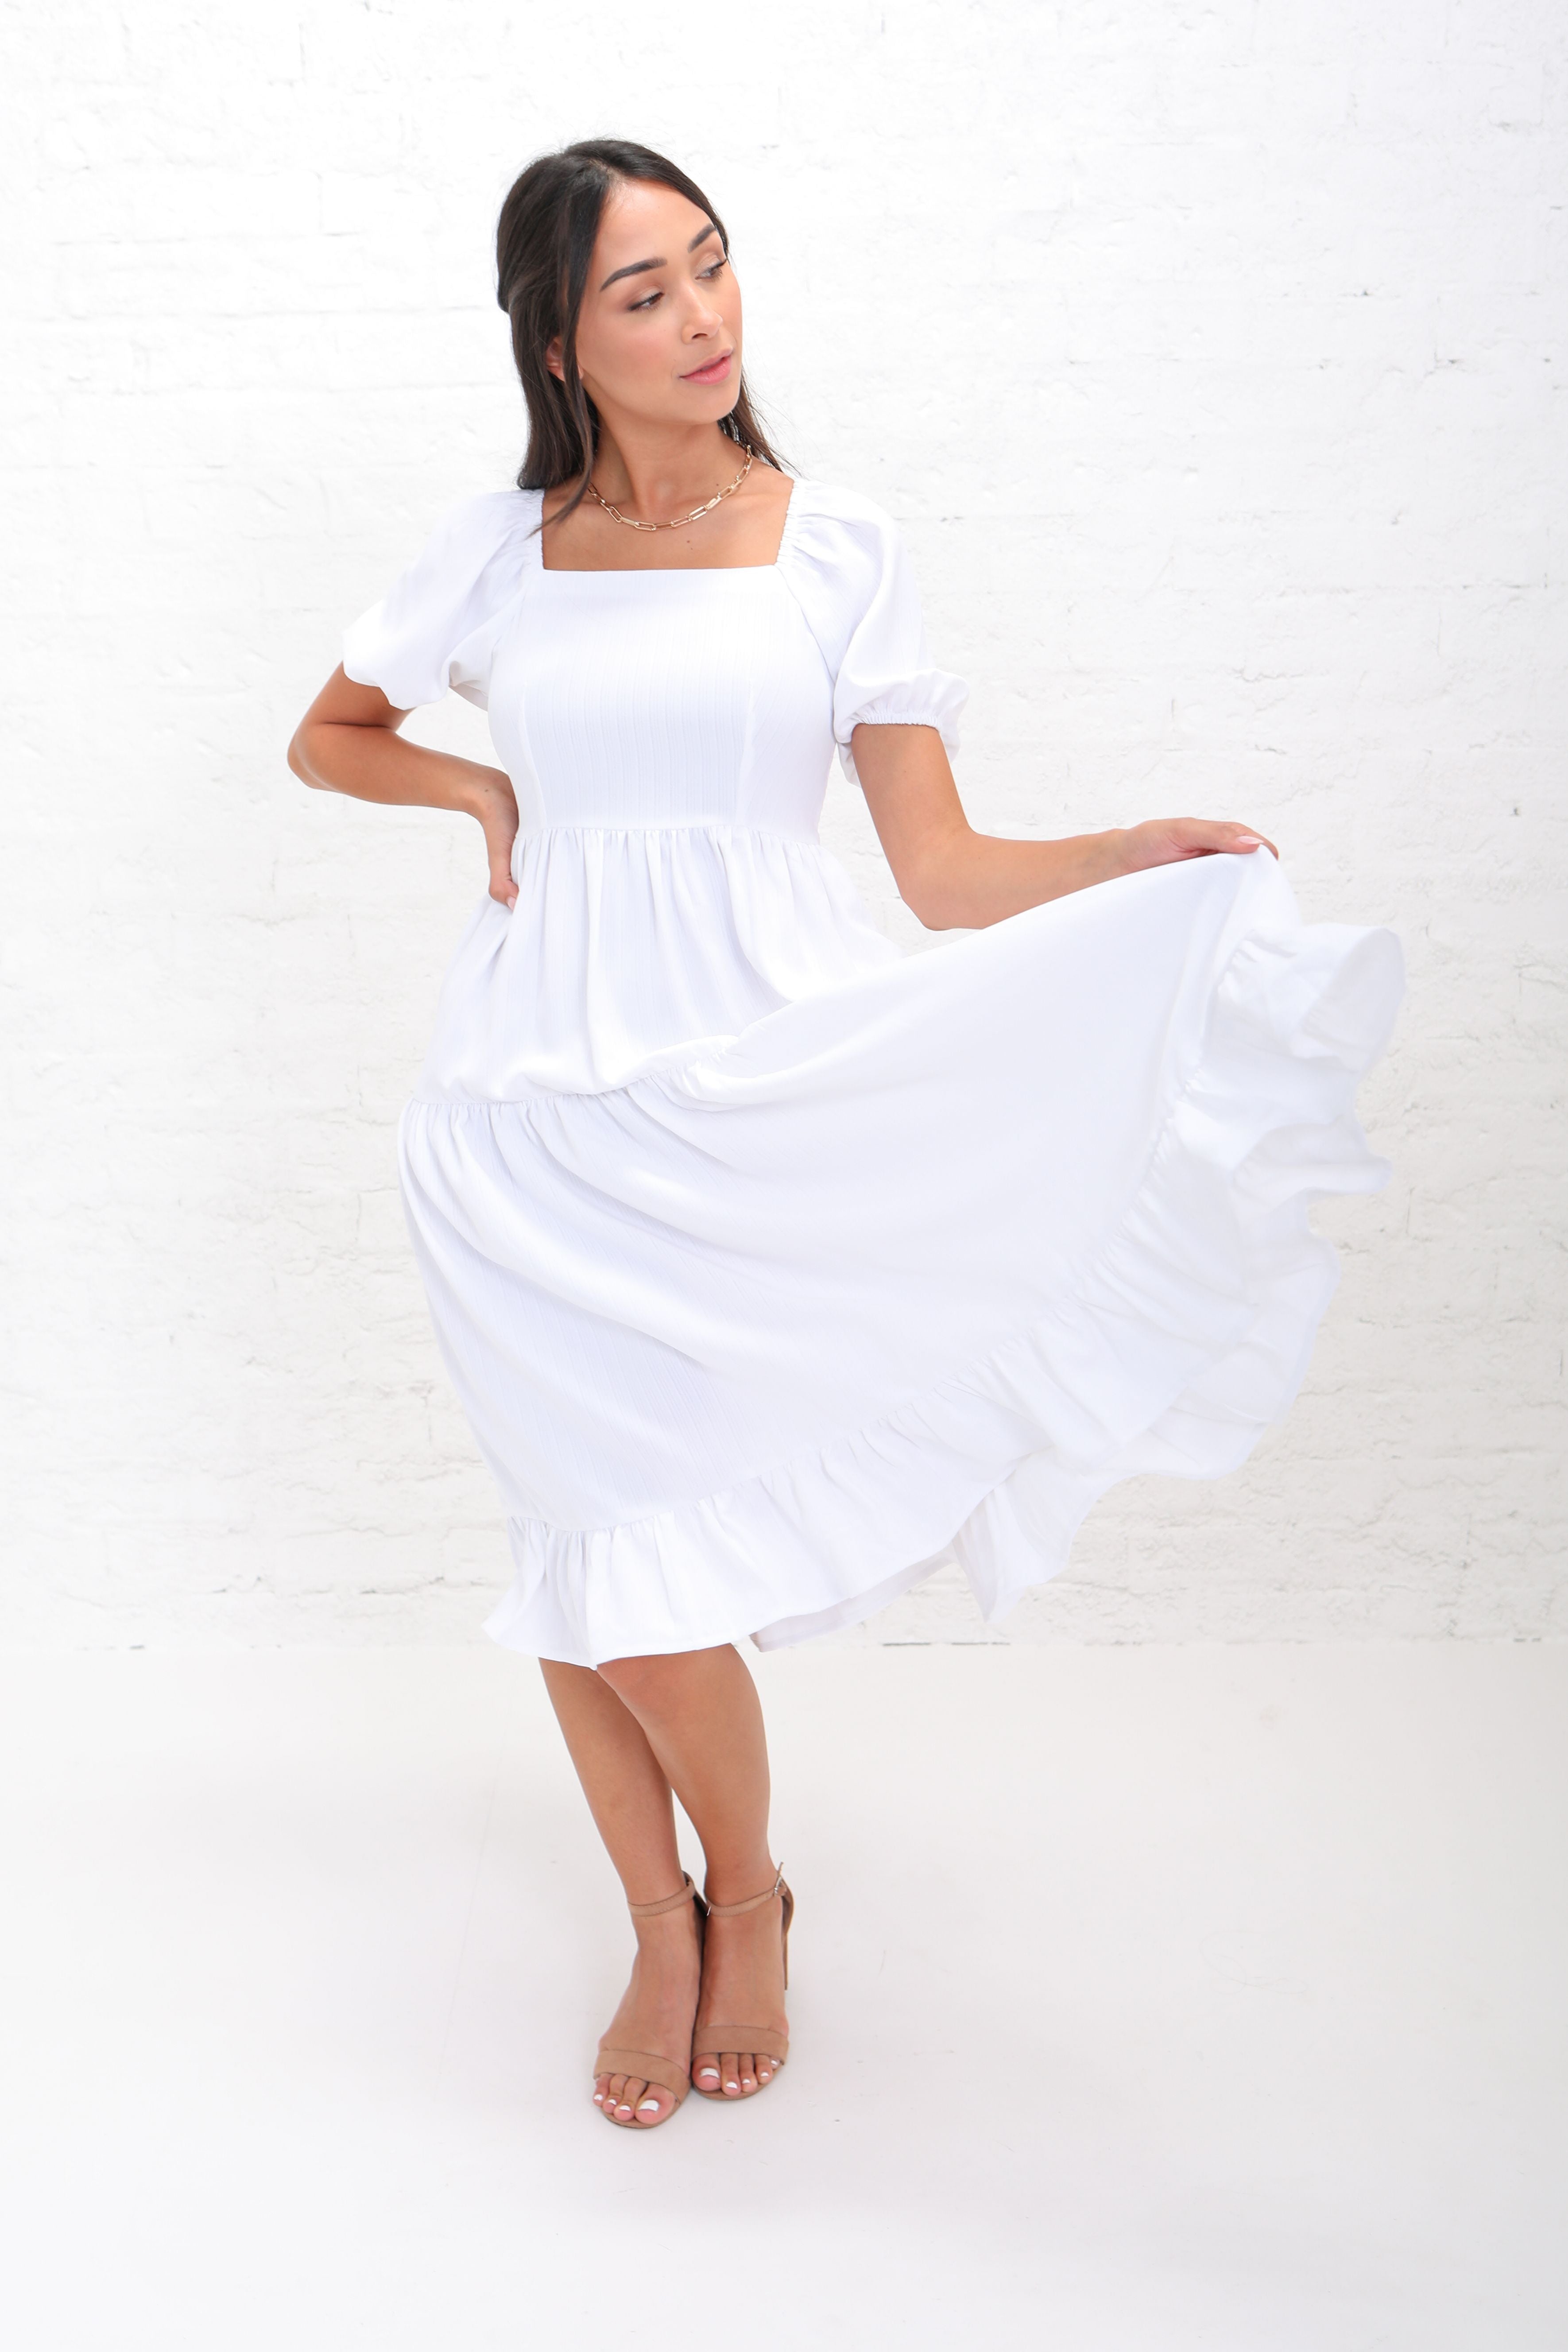 Poppy in White Modest Dress